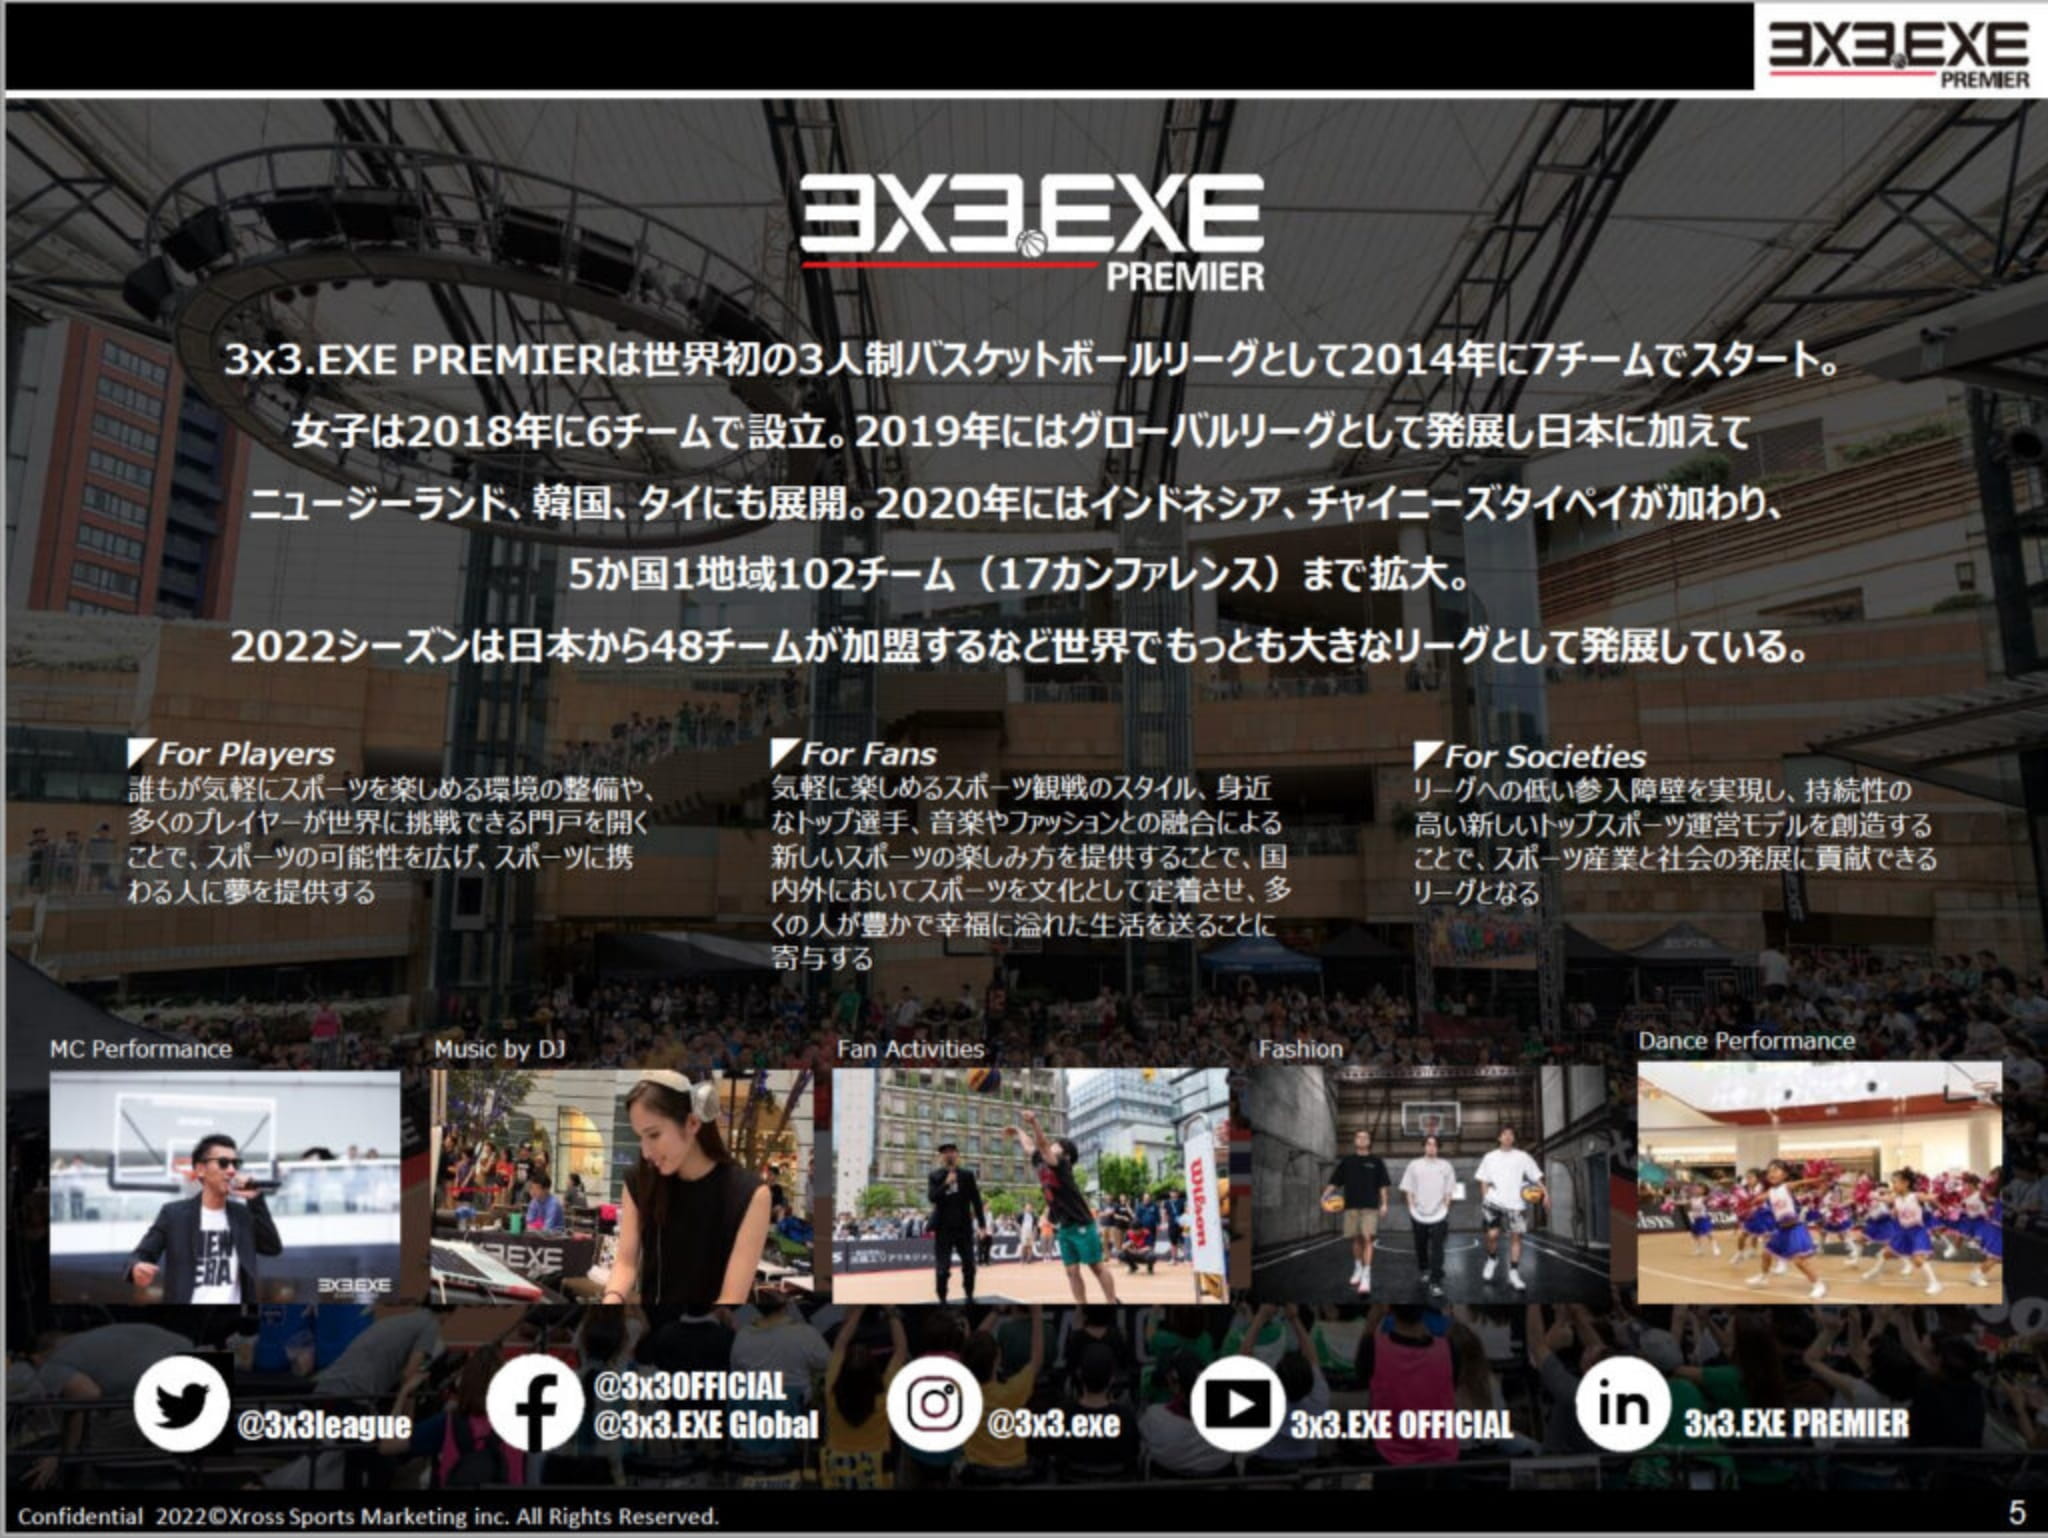 3×3.EXE PREMIERは世界初の3人制バスケットボールリーグとして2014年に7チームでスタート。女子は2016年に6チームで設立。2019年にはグローバルリーグとして発展し日本に加えて、ニュージーランド、韓国、タイにも展開。2020年にはインドネシア、チャイニーズタイペイが加わり、5か国1地域102チーム（17カンファレンス）まで拡大。2022シーズンは日本から48チームが加盟するなど世界で最も大きなリーグとして発展している。